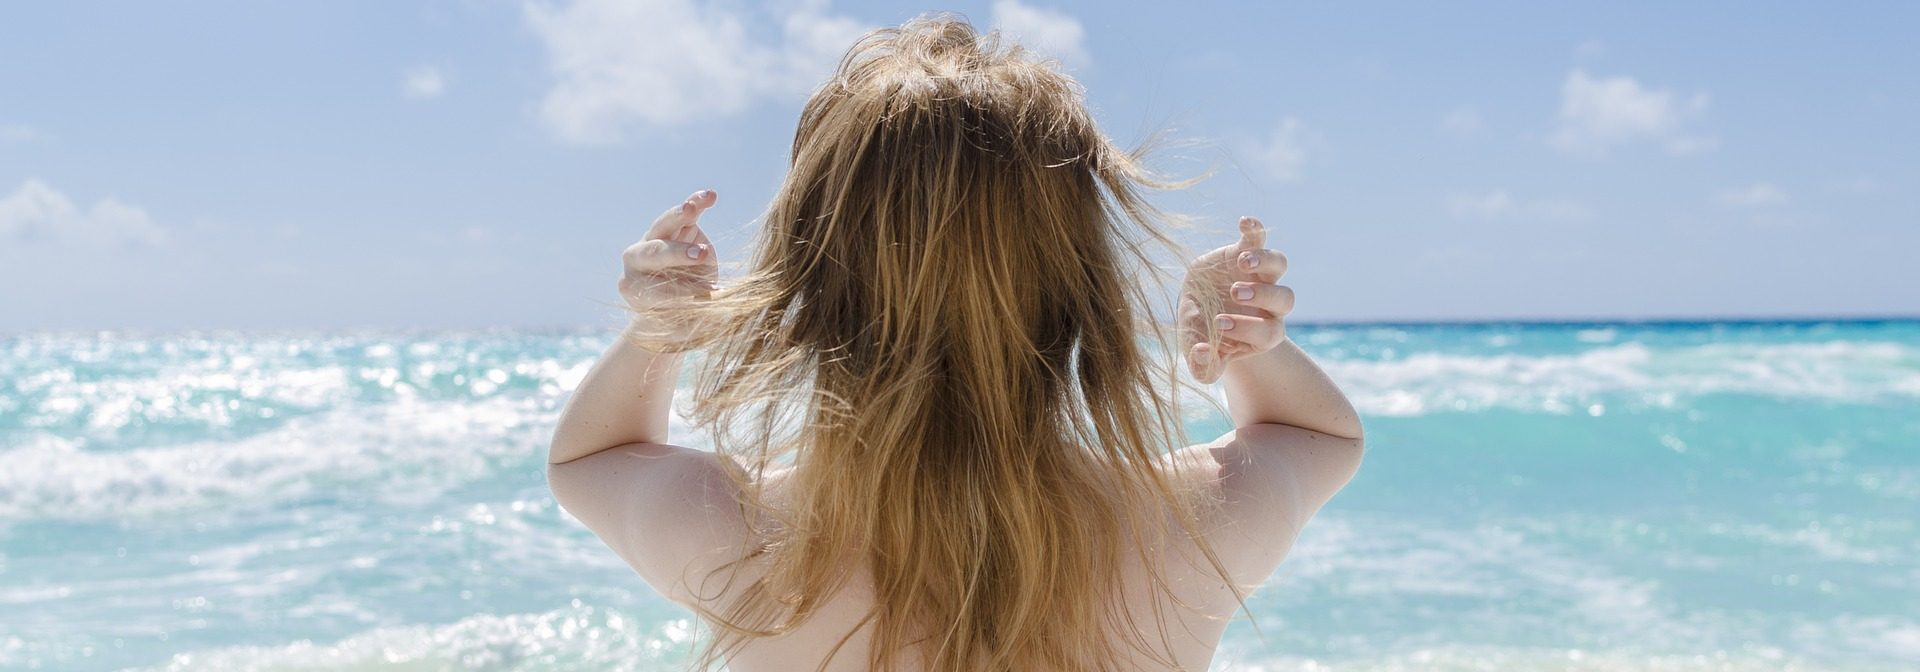 Как ухаживать за волосами на море, чтобы избежать соломы на голове